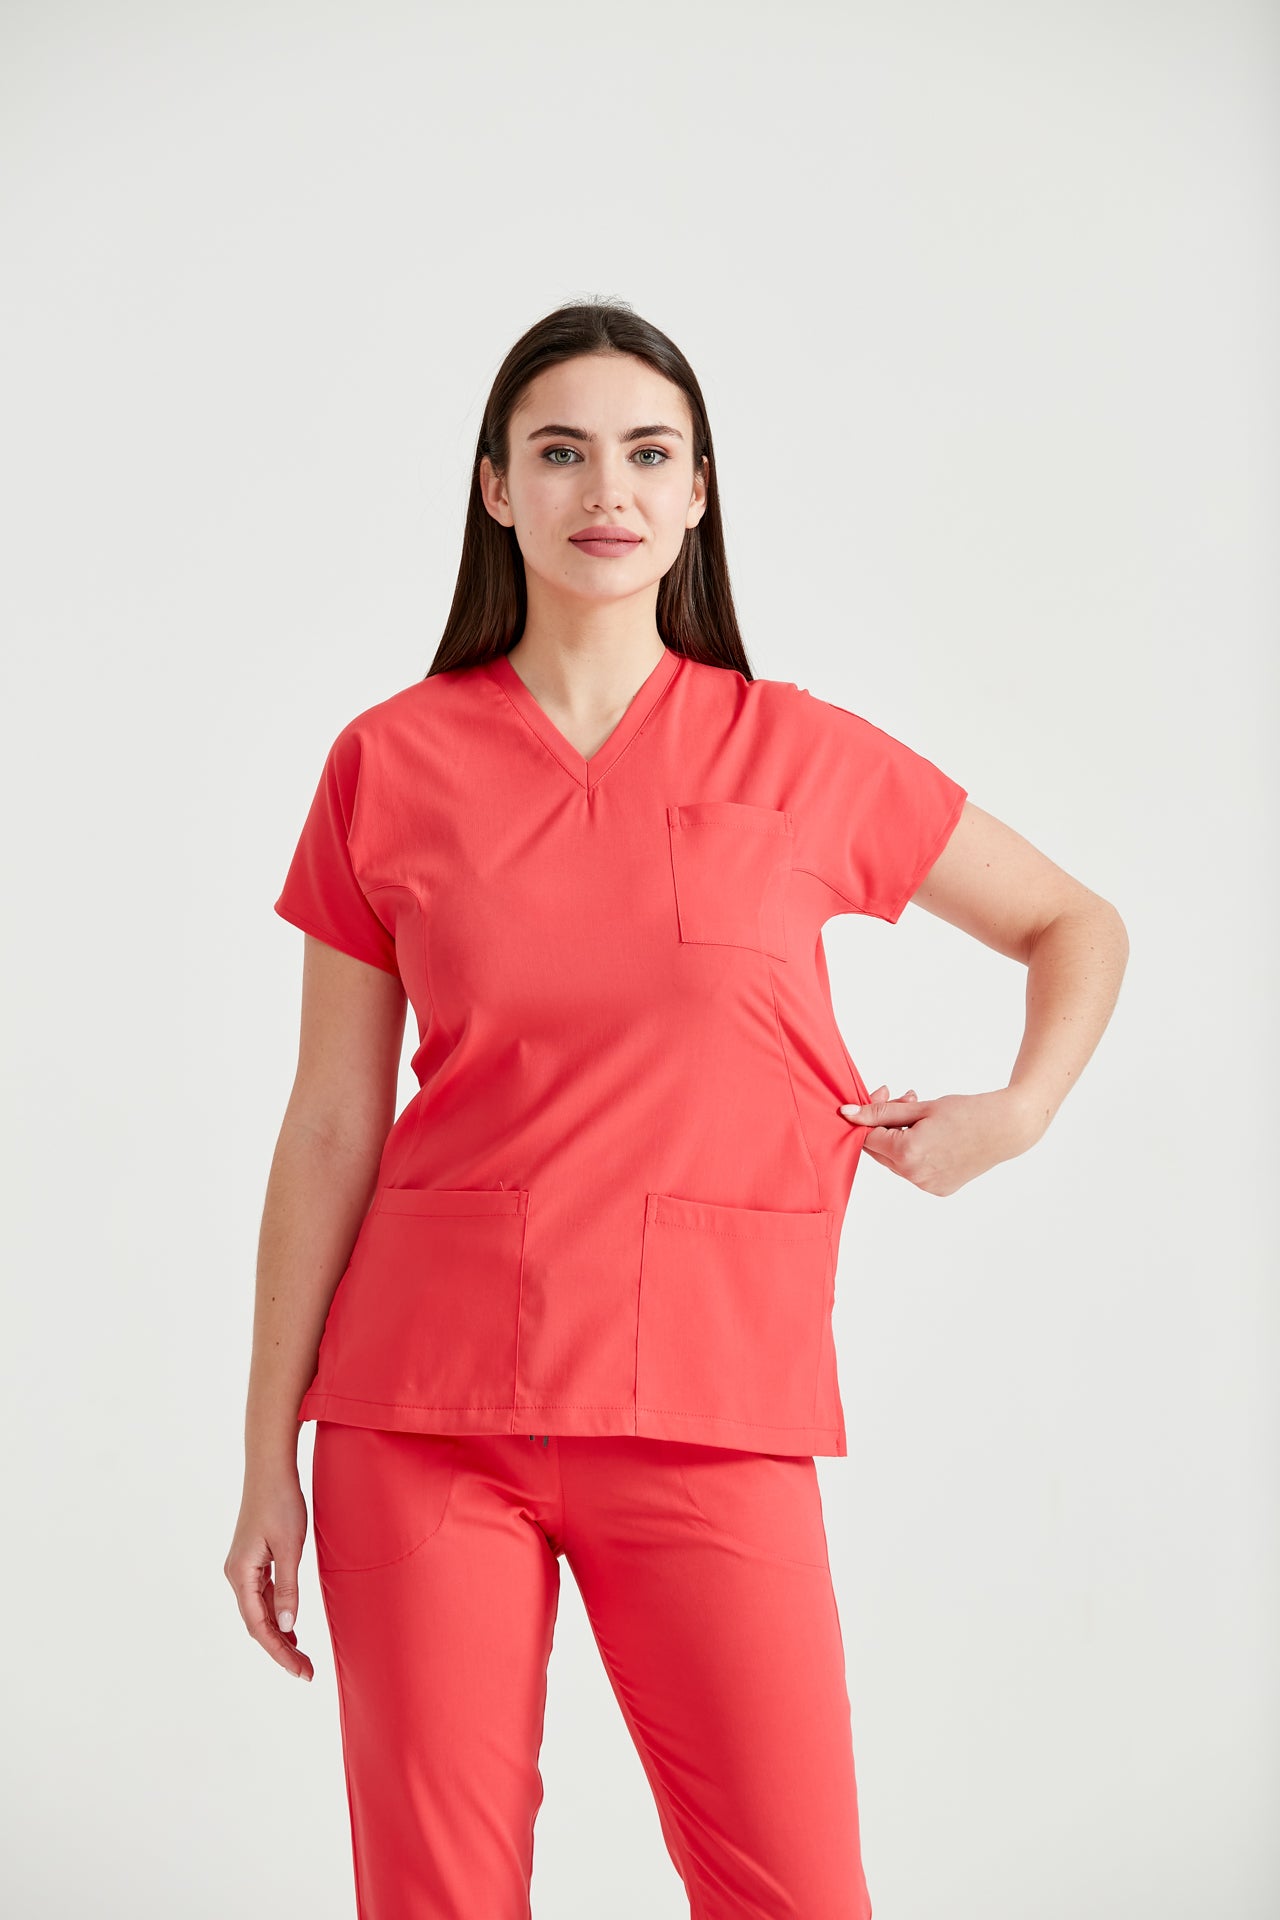  Asistenta medicala imbracata in costum rosu corai, din elastan Coral, vedere din fata